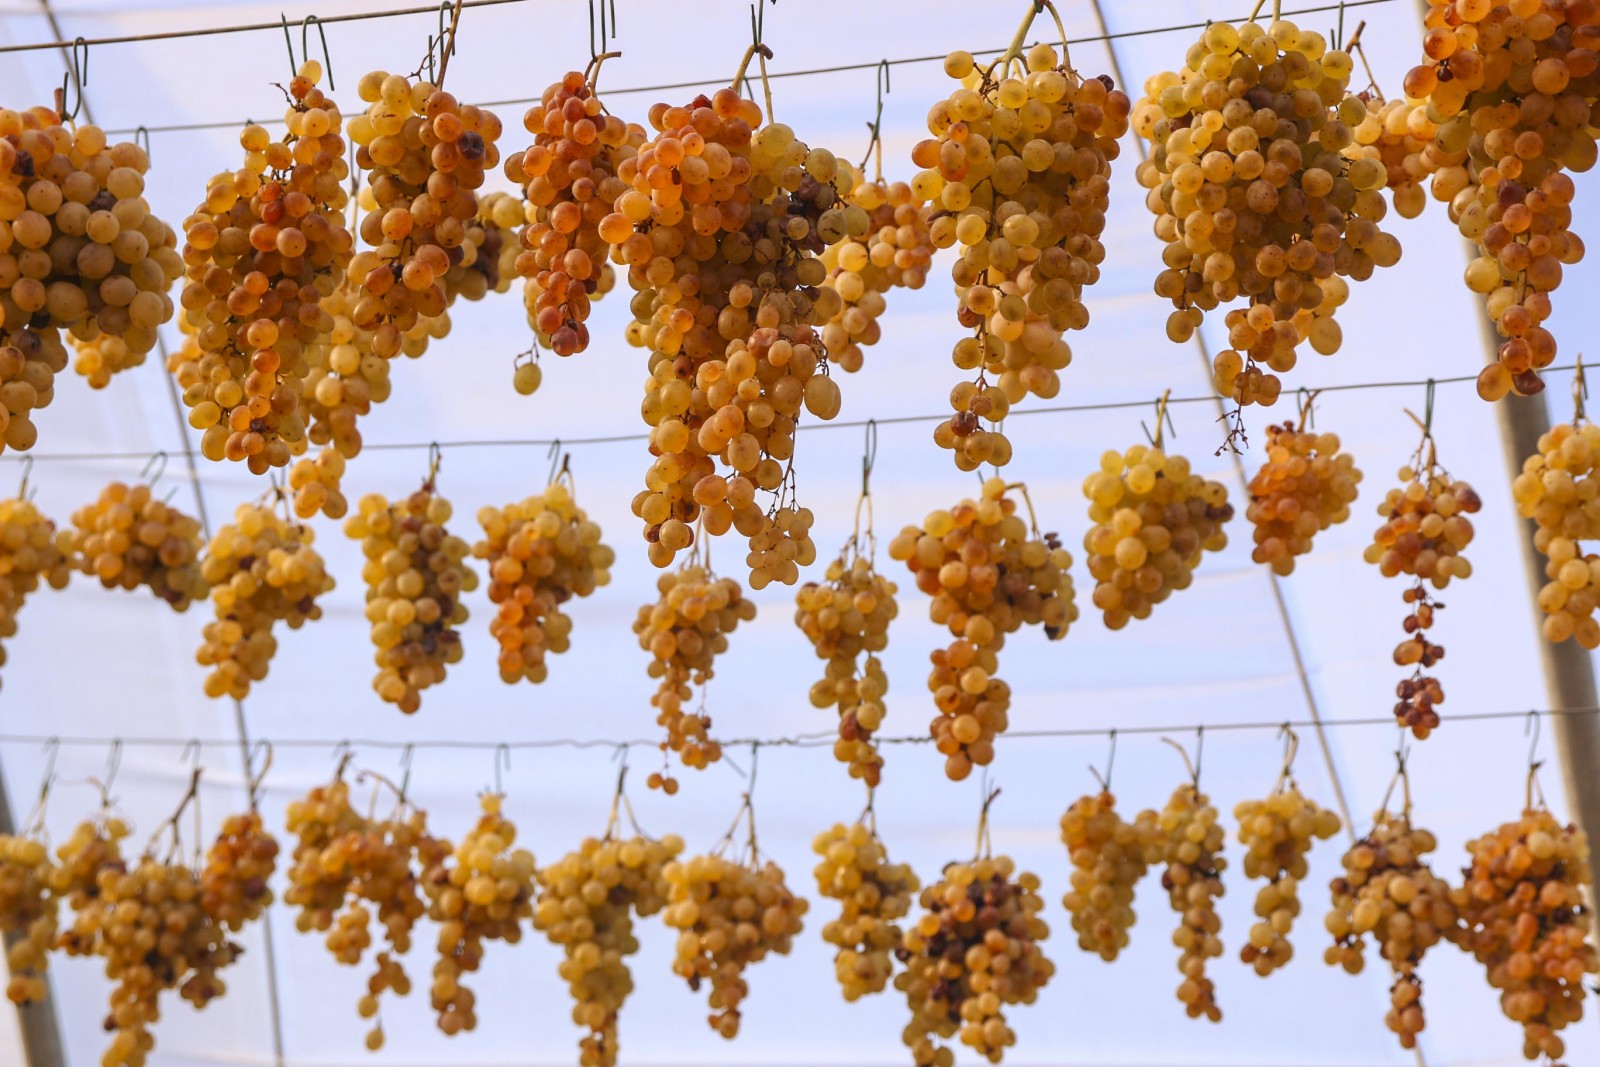 Ansonica grapes